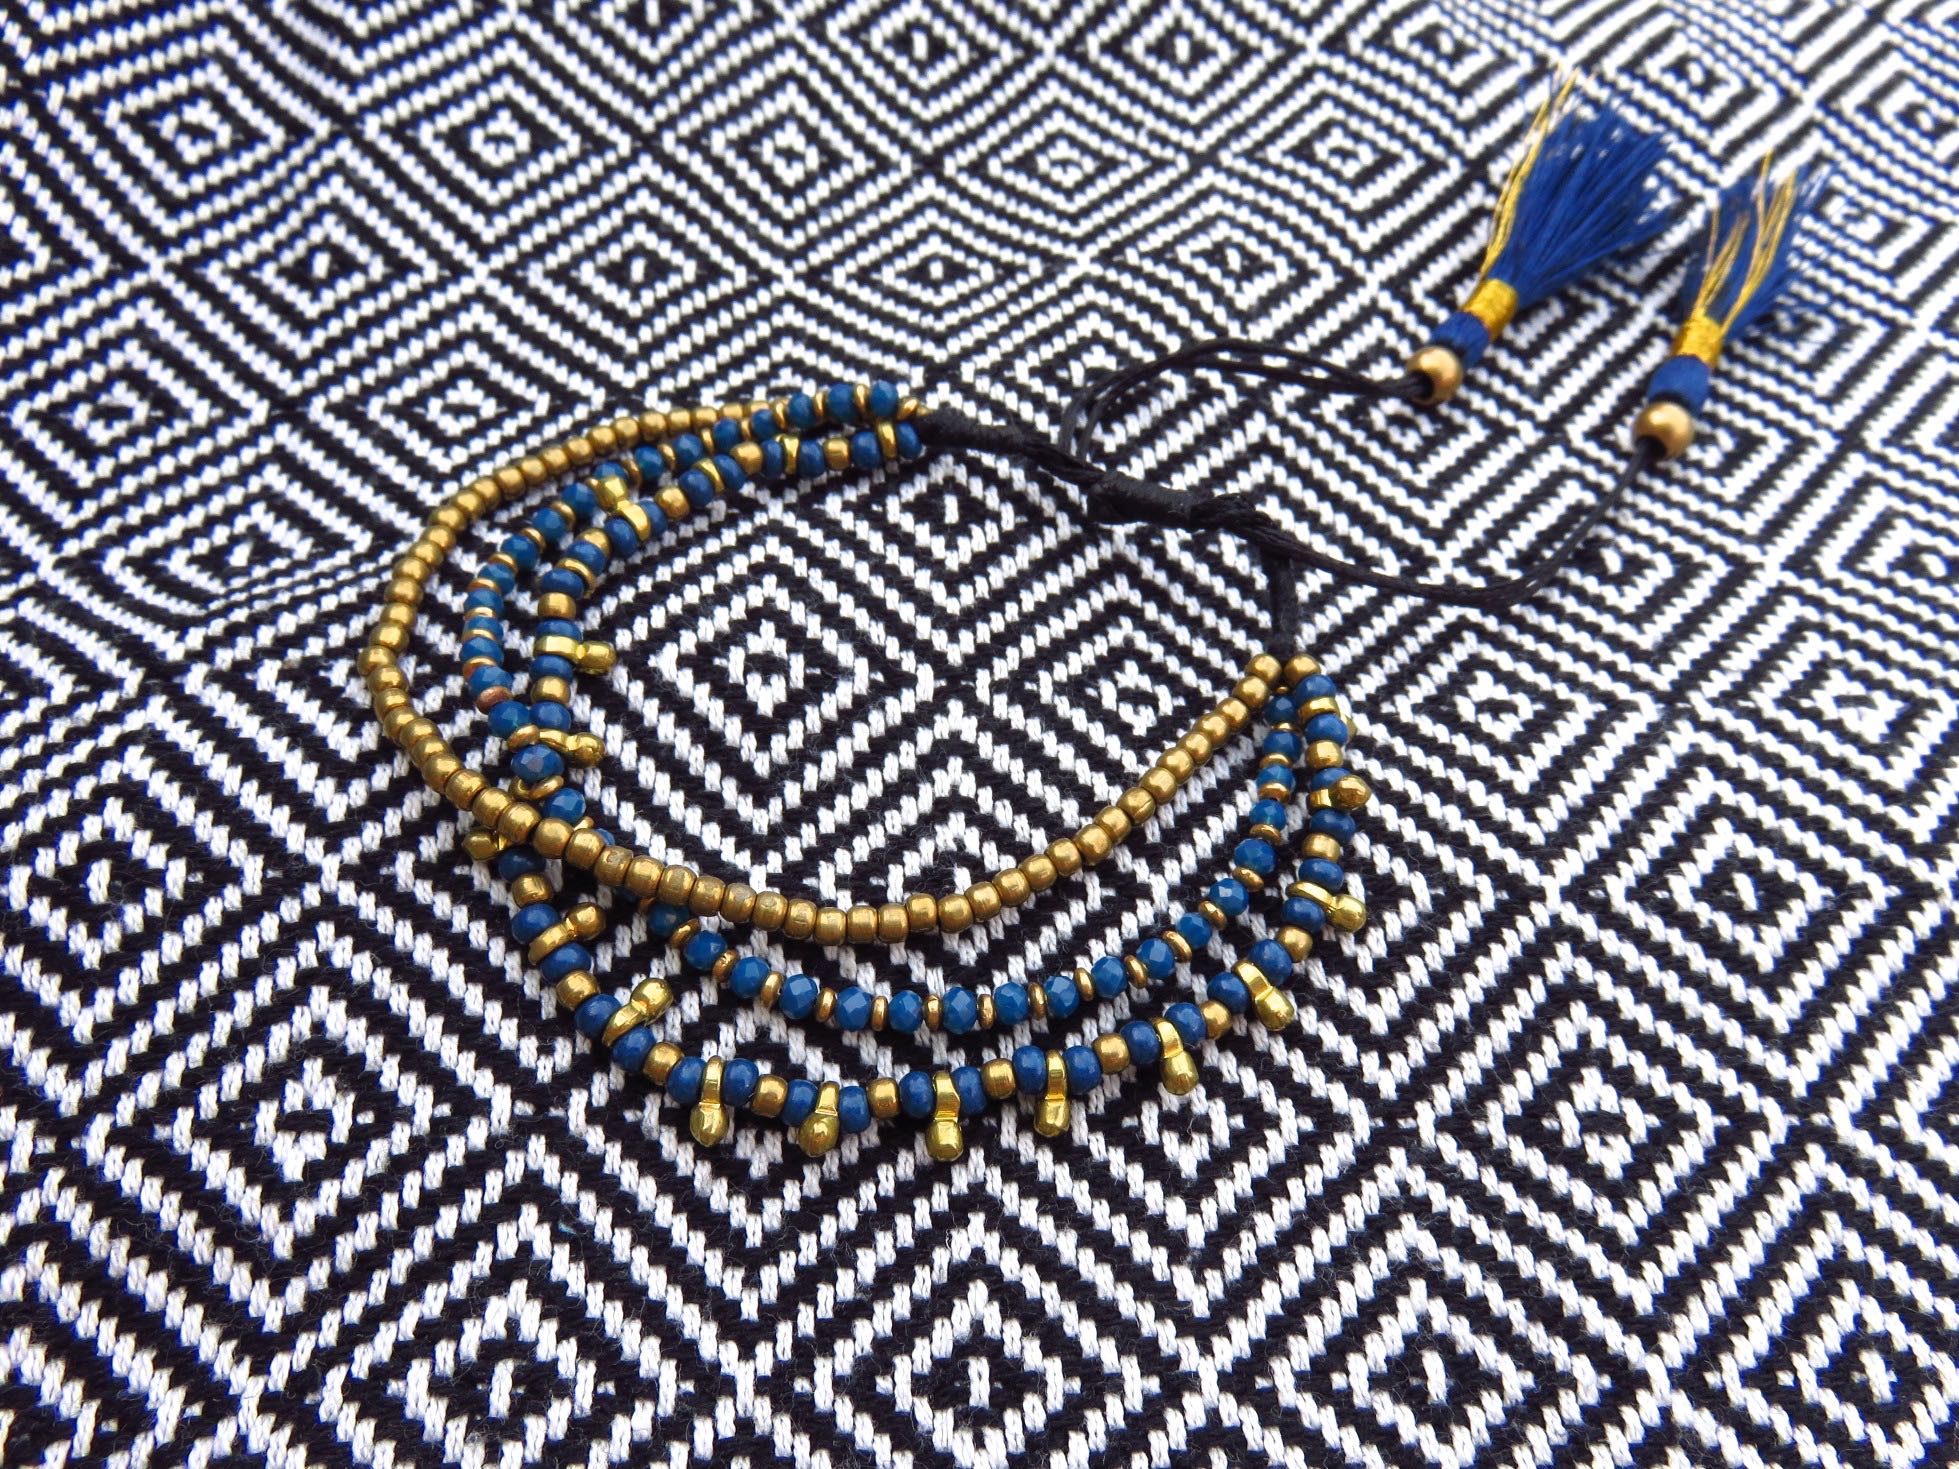 verstellbares Armband aus Messing in schwarz oder blau mit Tasseln